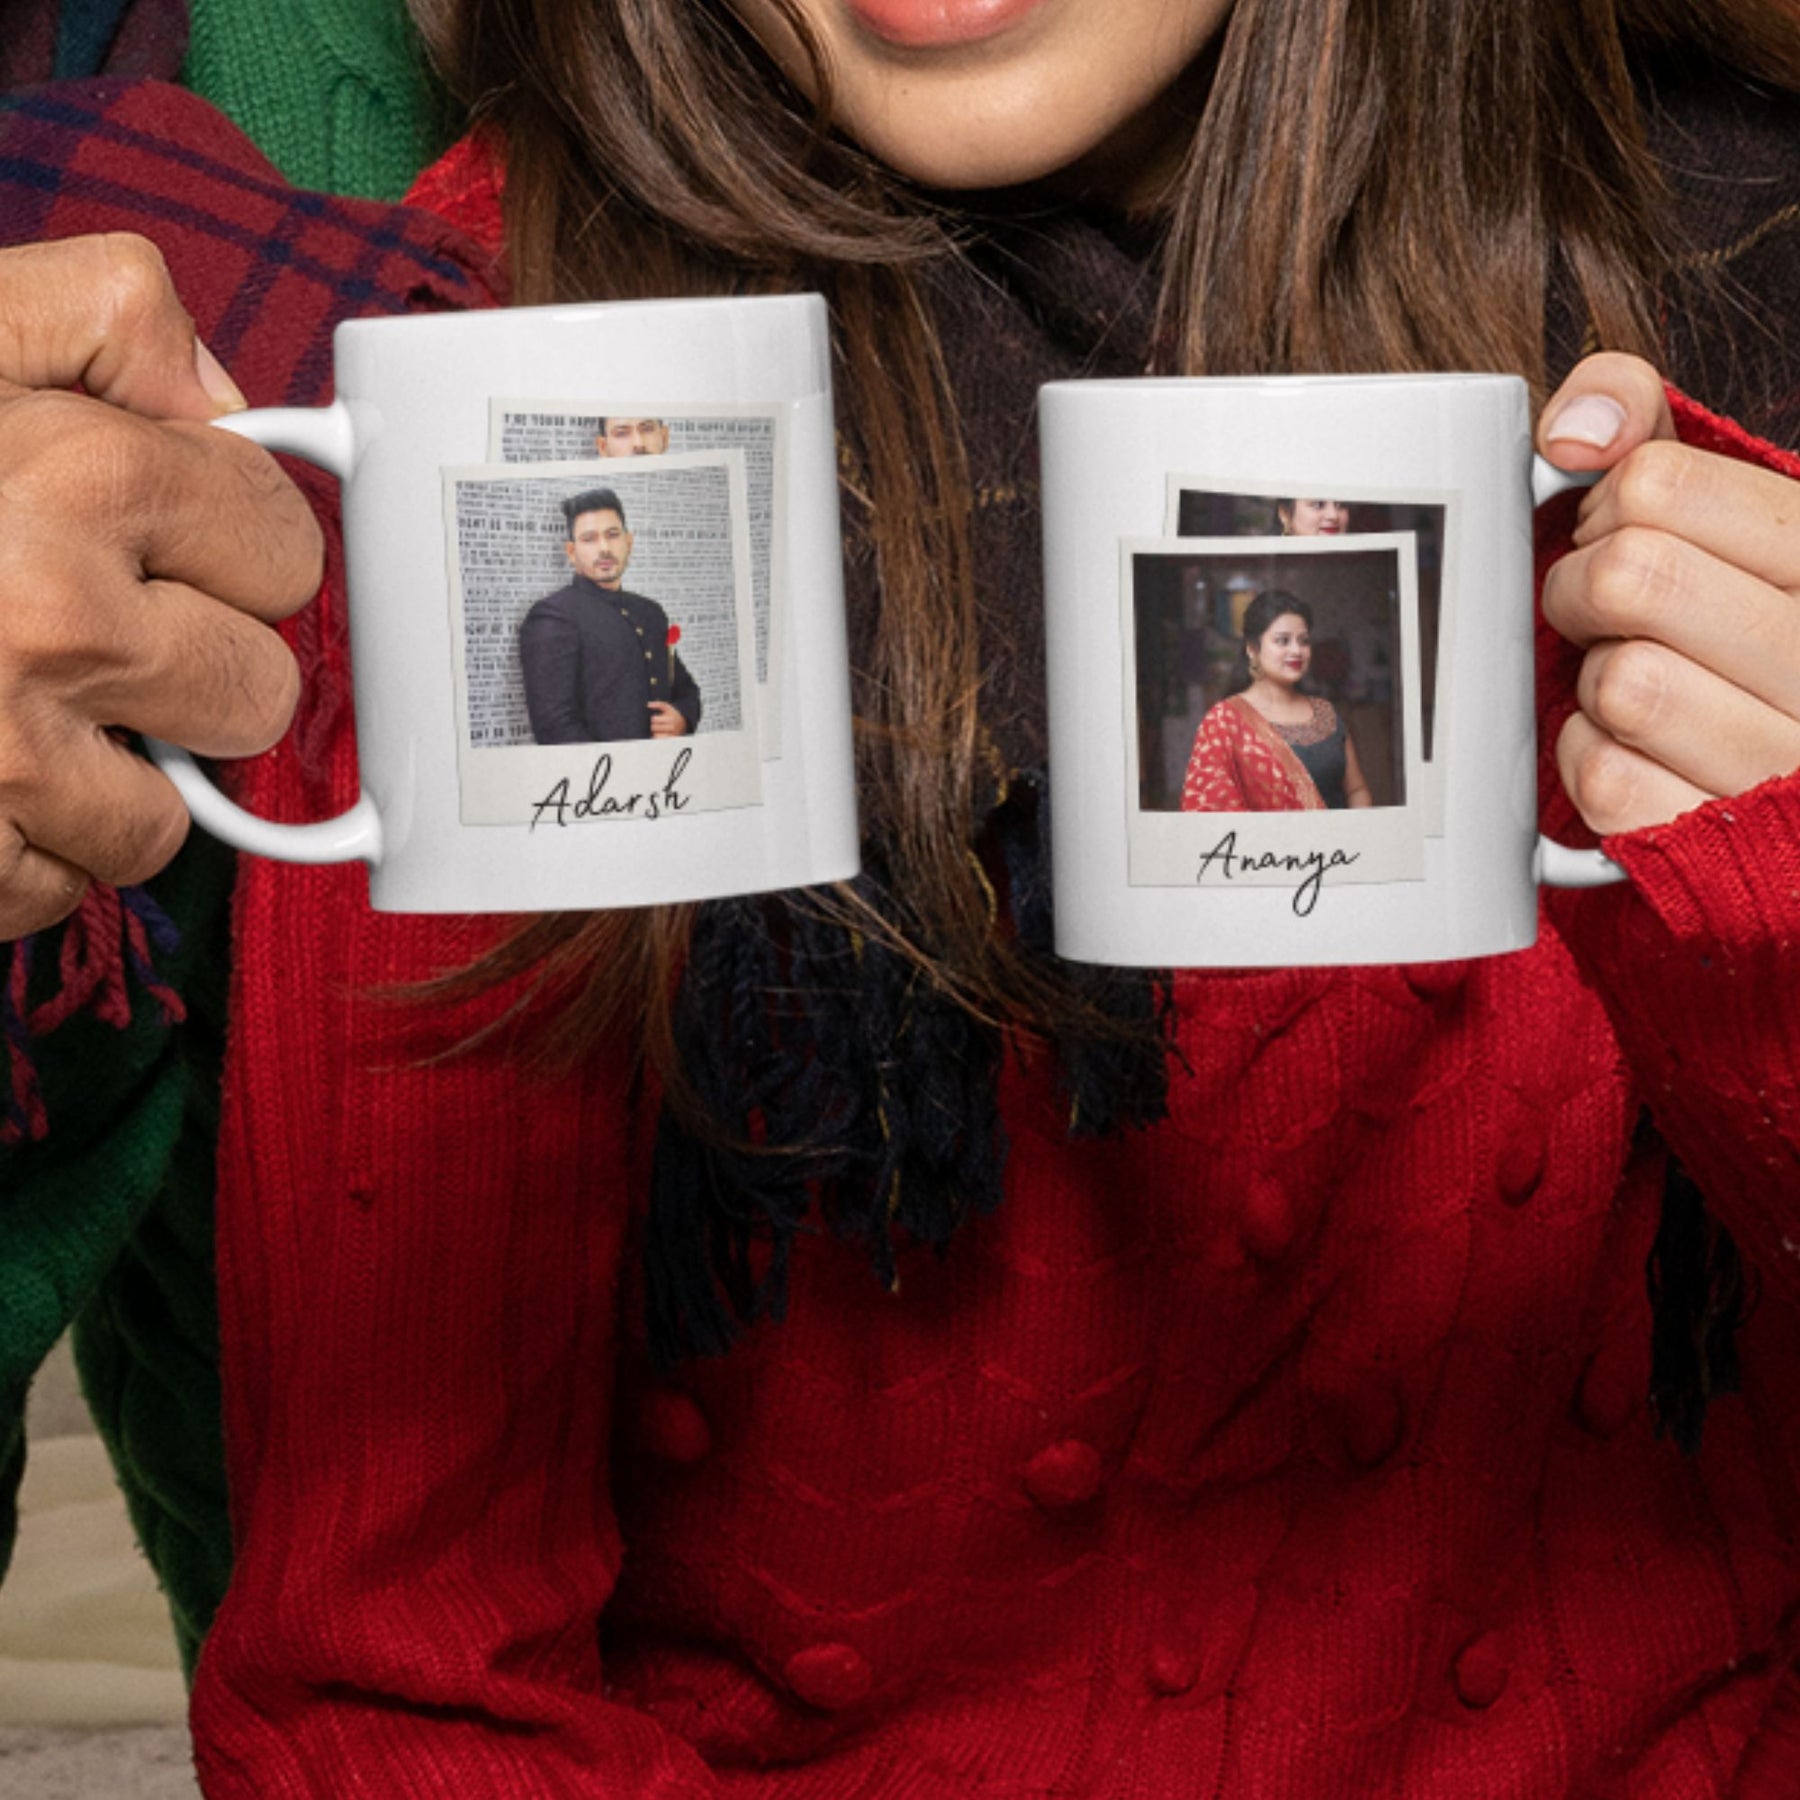 save-the-date-white-couple-ceramic-mug-gogirgit-com